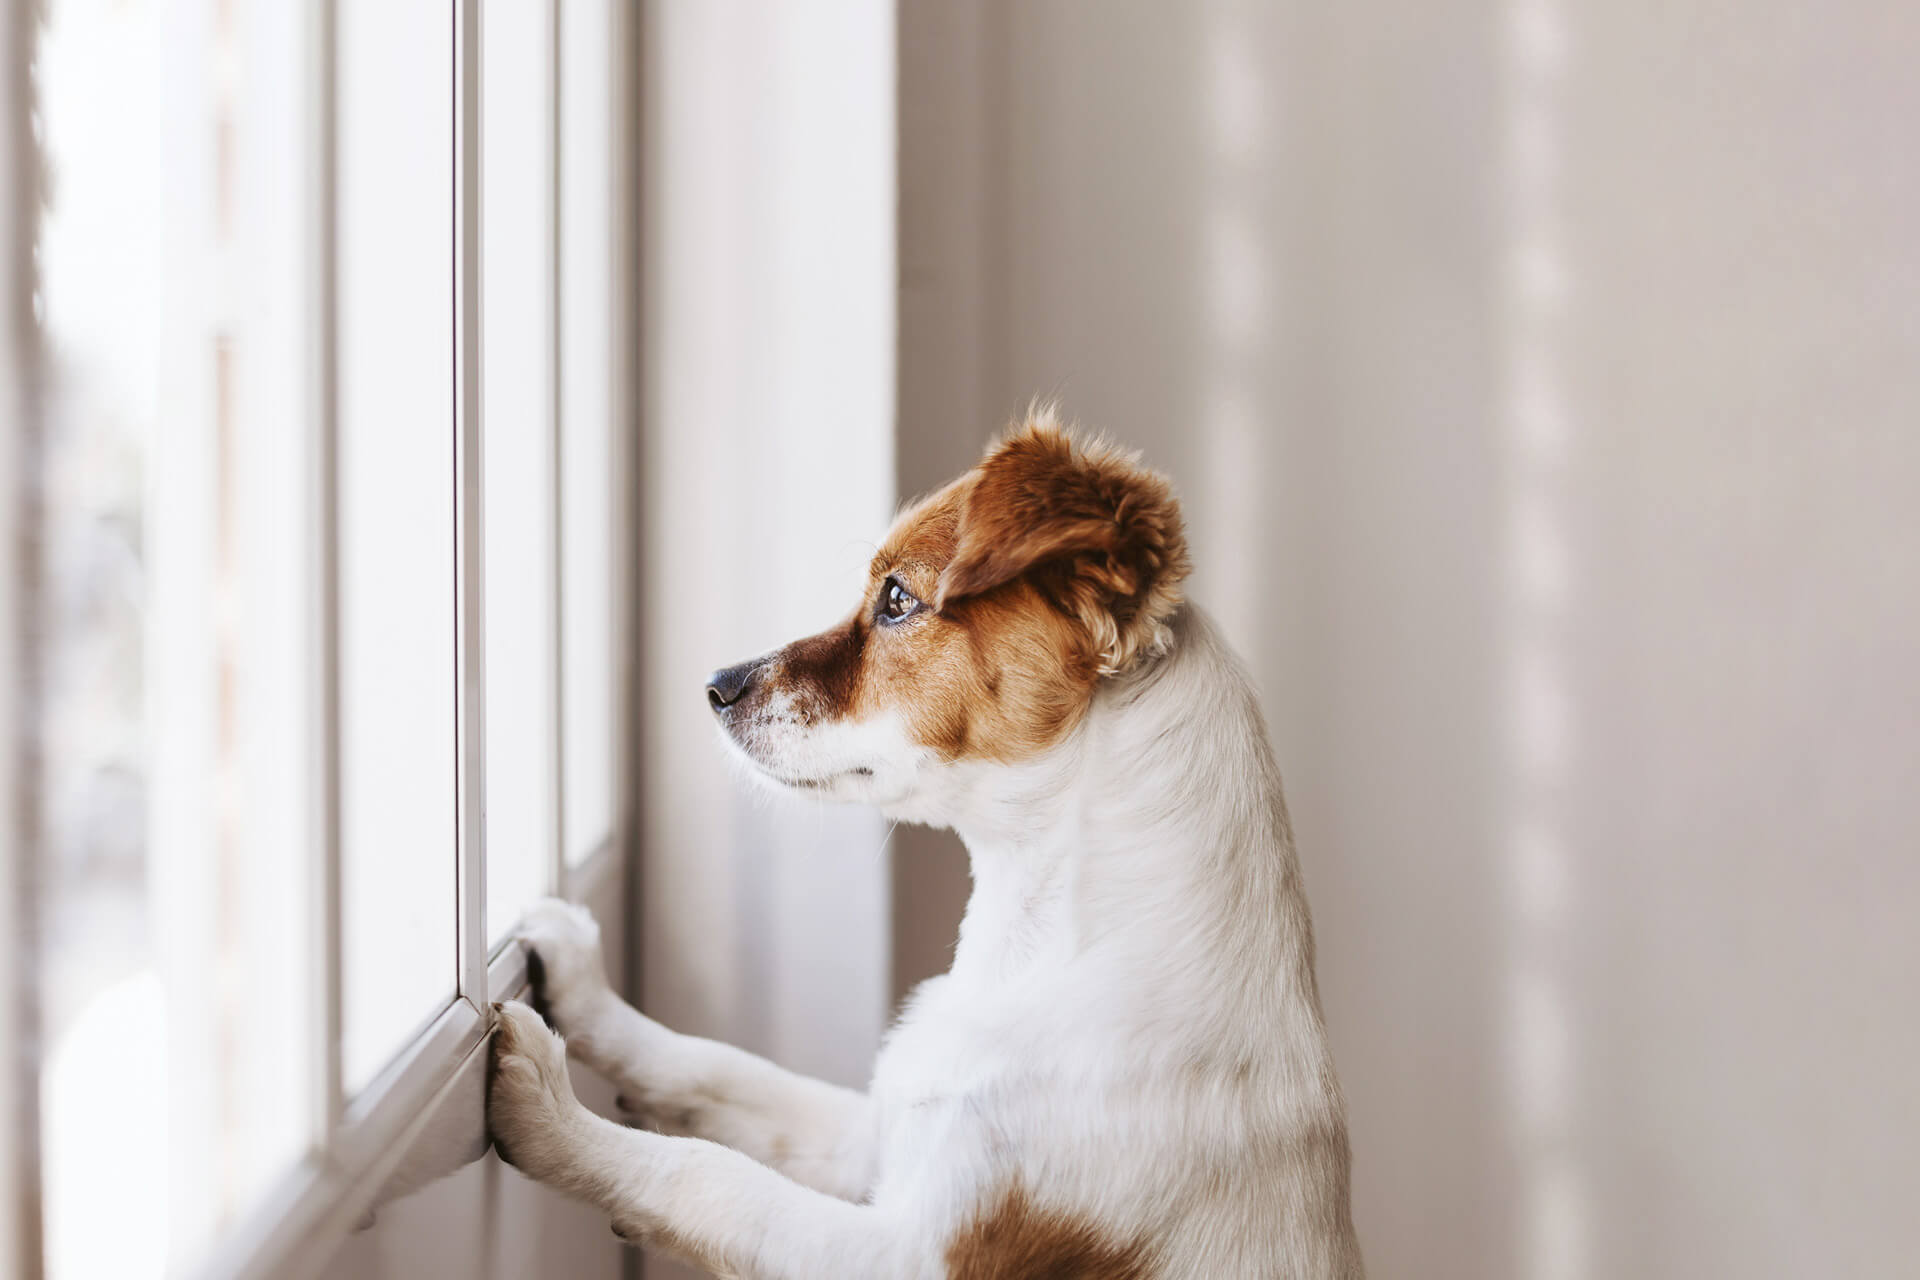 Dog dementia: symptoms, treatments & more - Tractive